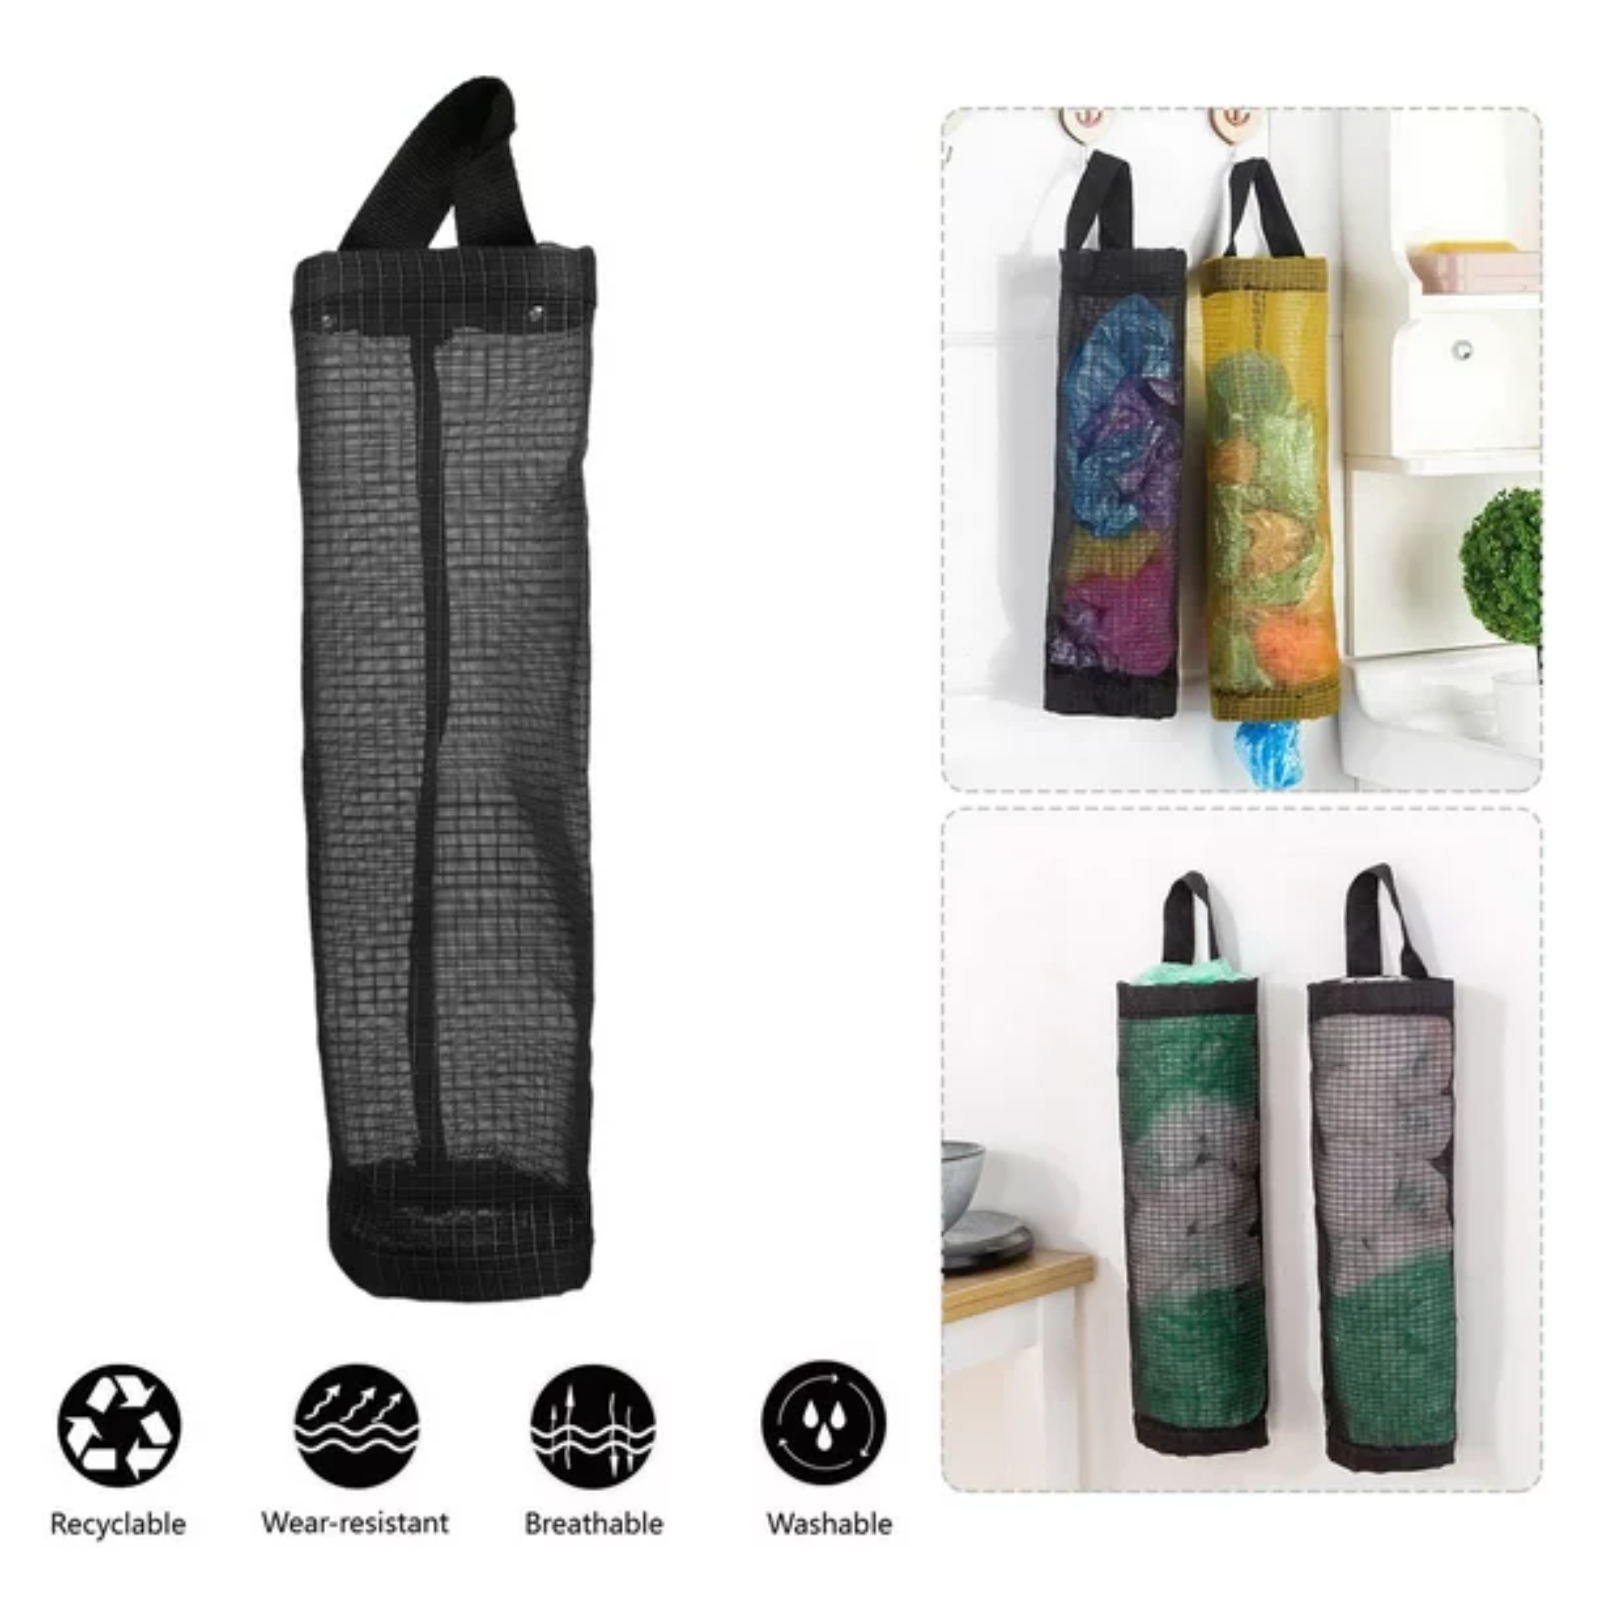 Plastic Carrier Bag Holder Hanging Shopping Storage Dispenser HANDMADE Fabric UK 